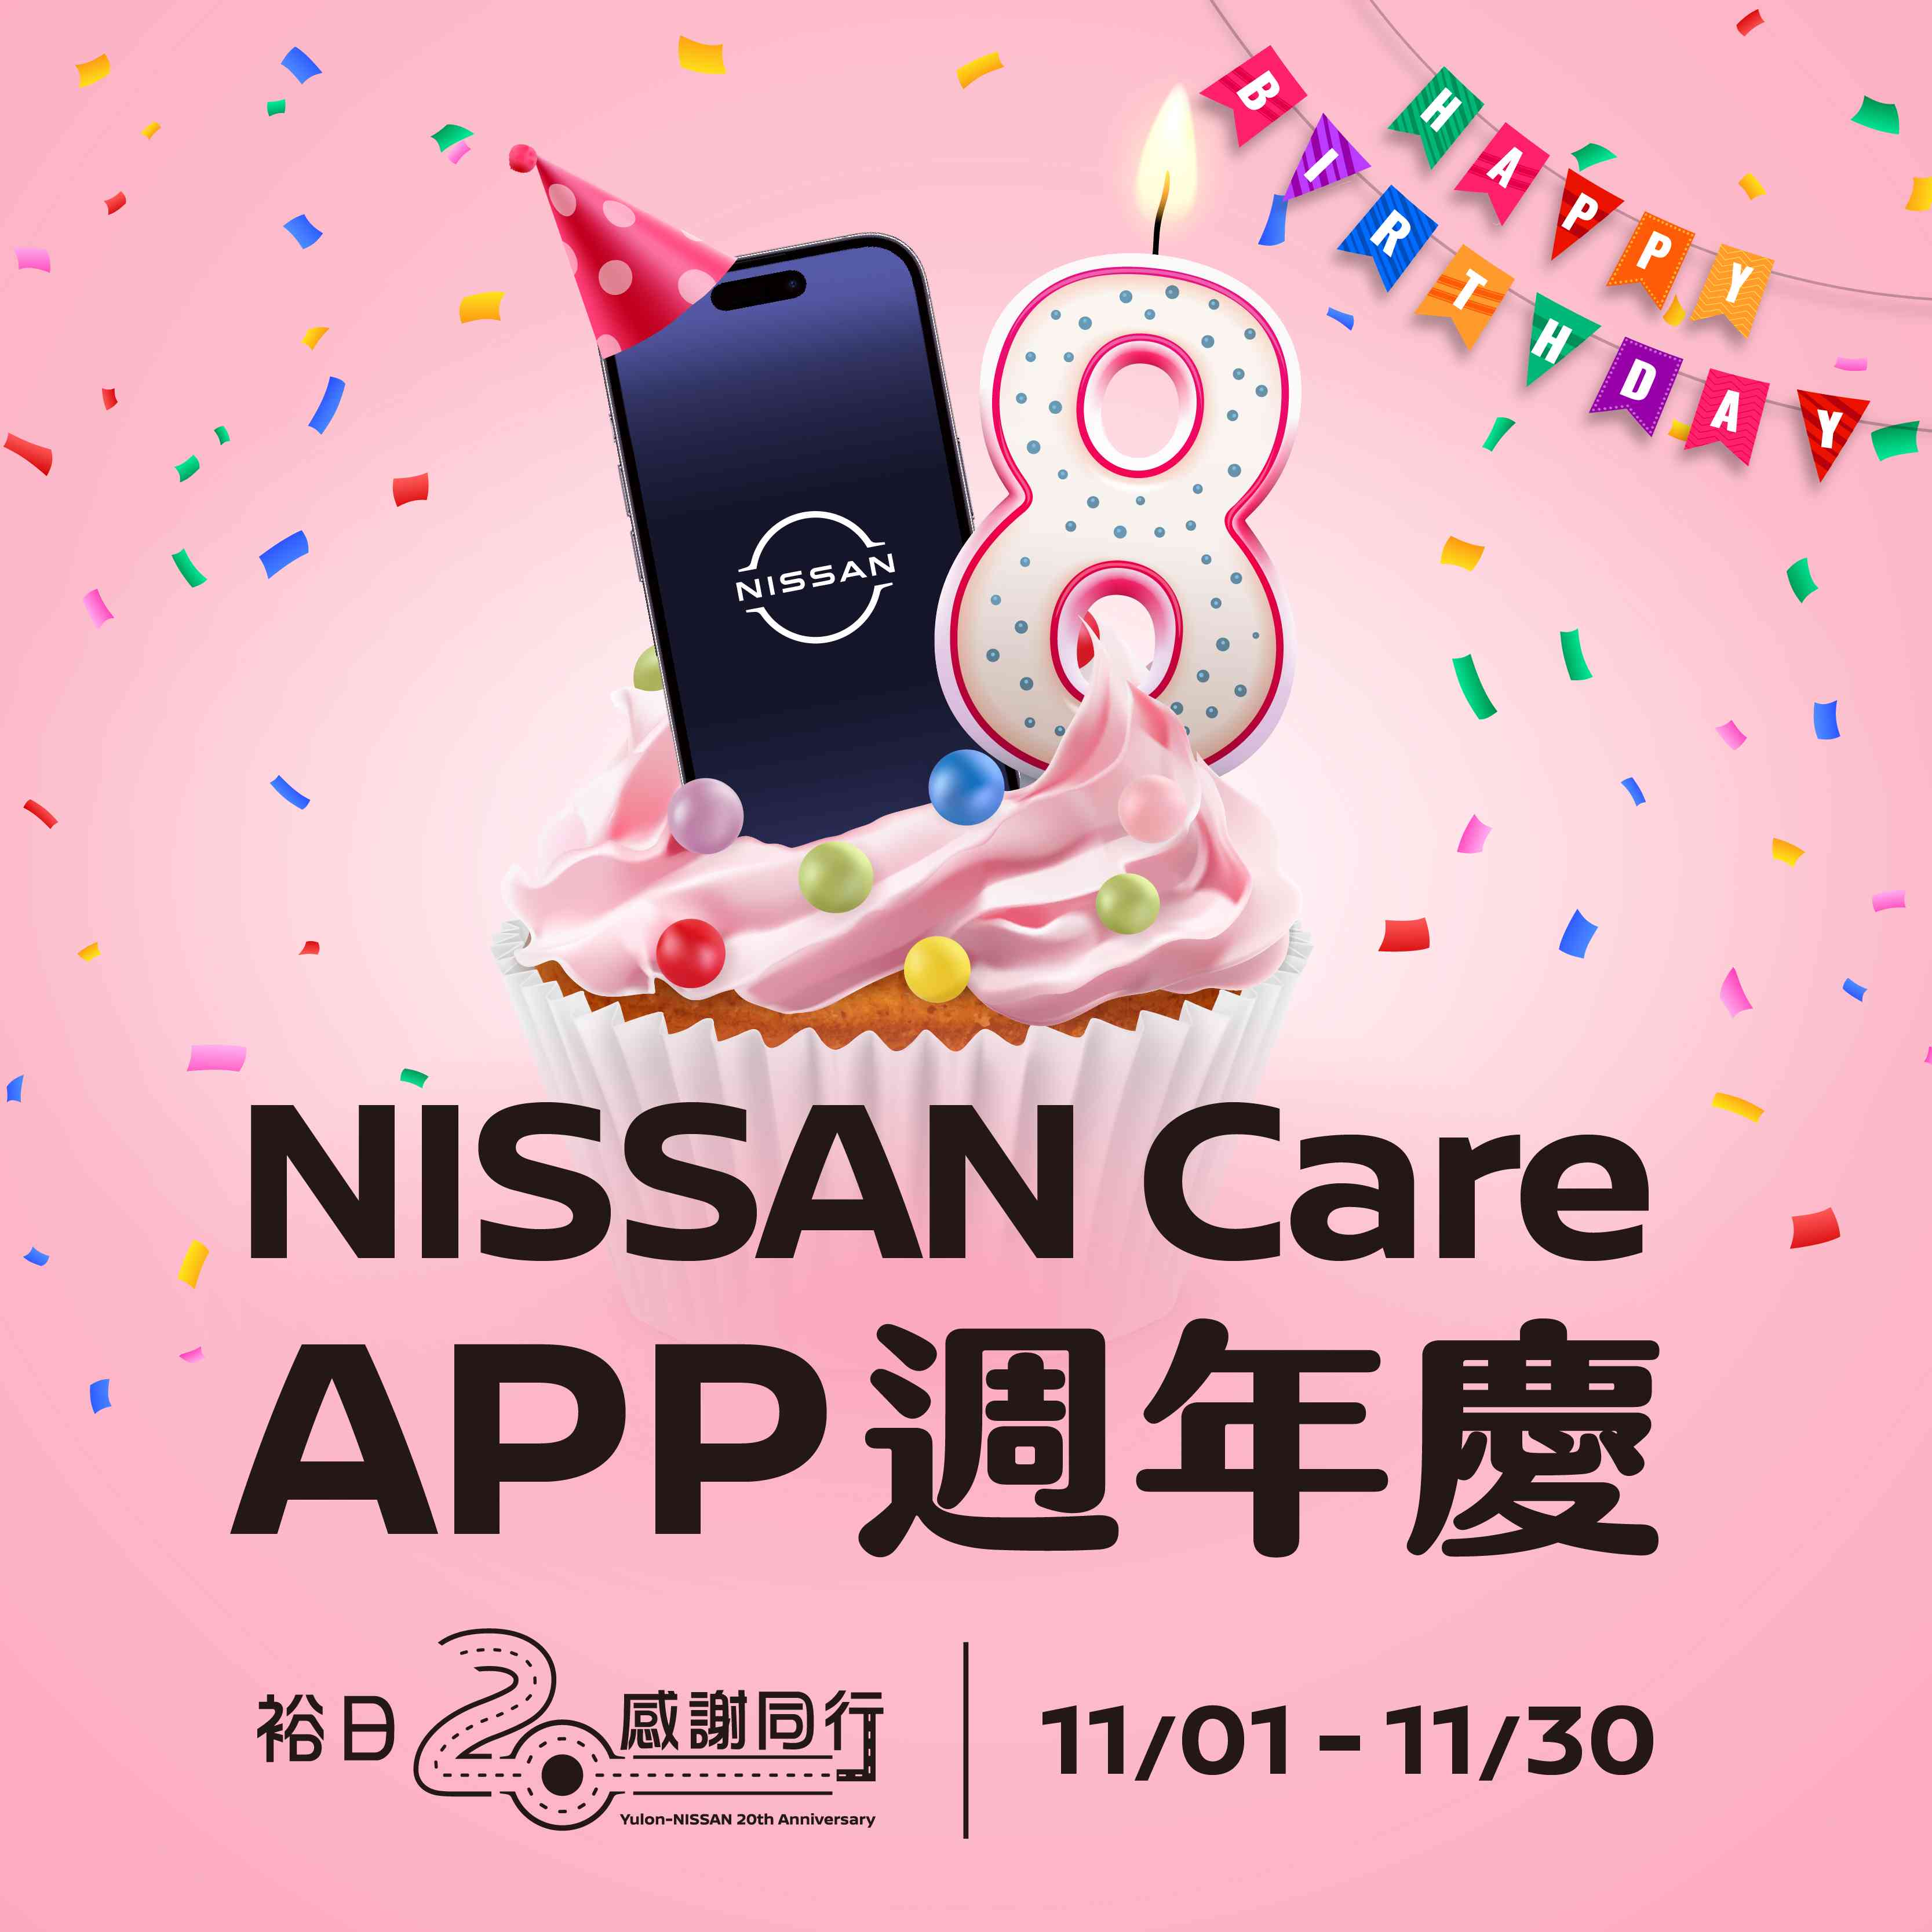 慶祝裕隆日產20週年  NISSAN Care APP 8週年慶擴大舉辦推出多項APP會員專屬活動  再抽iPhone及2萬元刷卡金